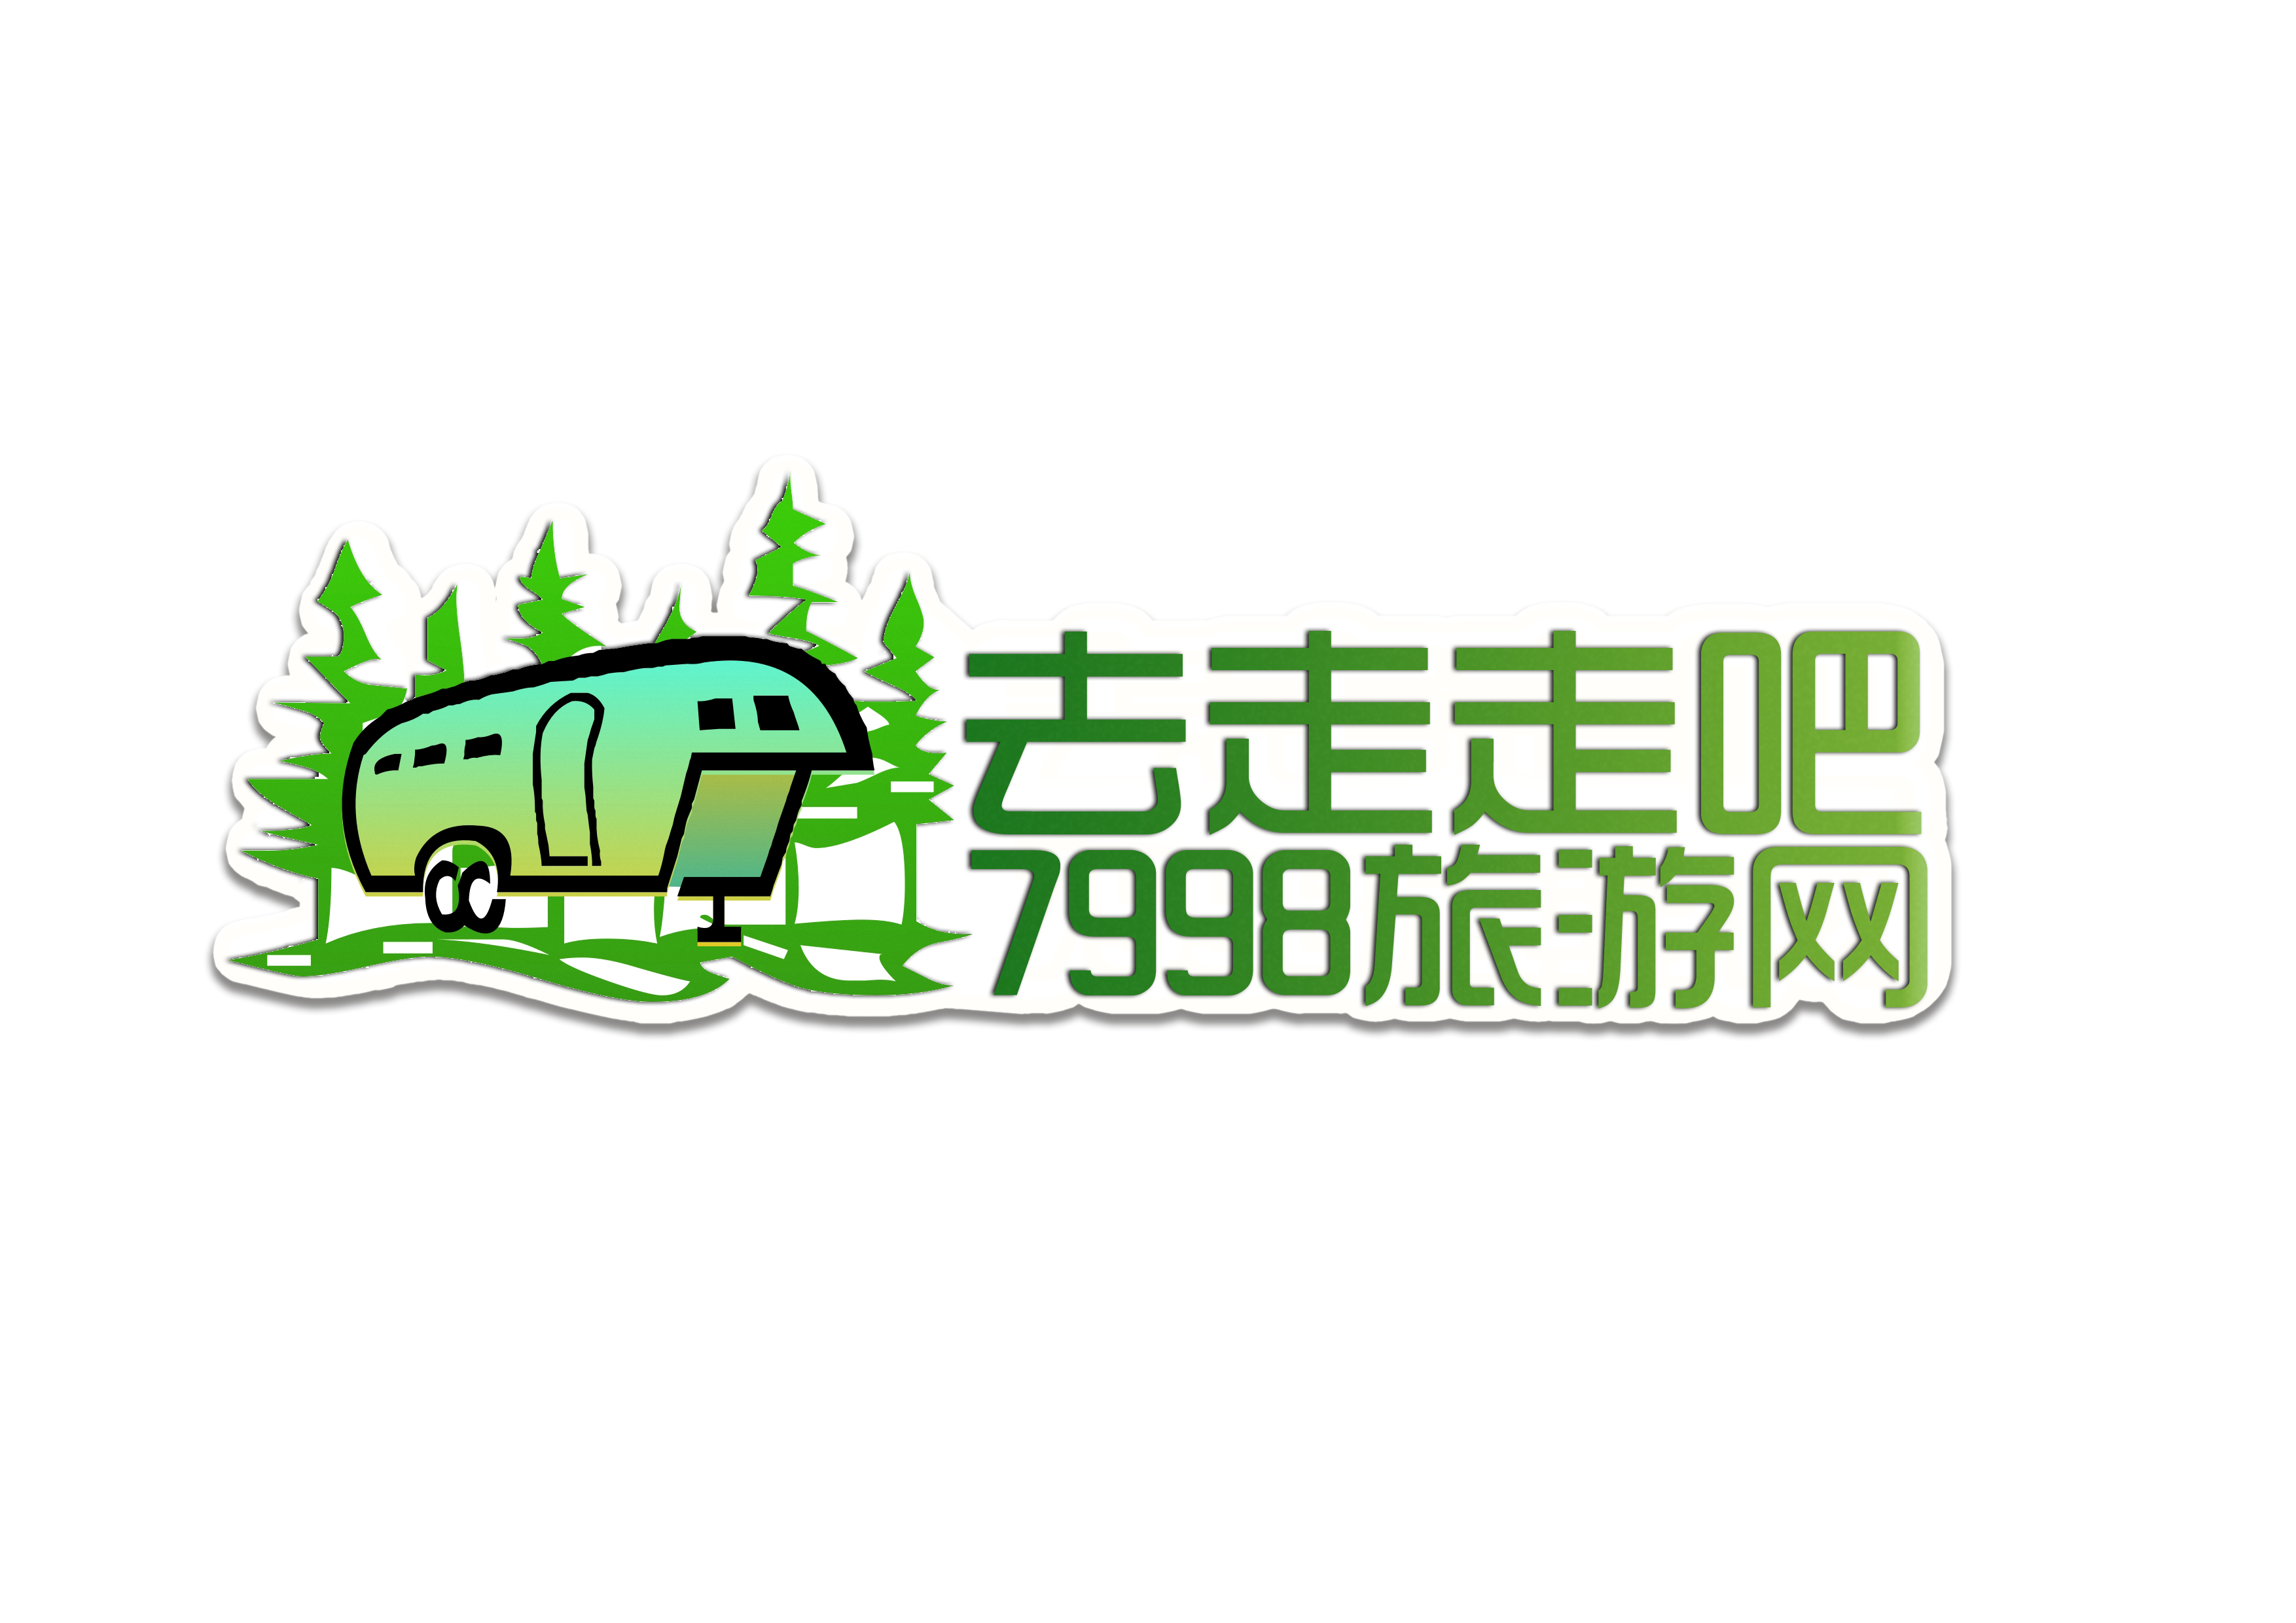 旅游网logo设计第26573924号稿件